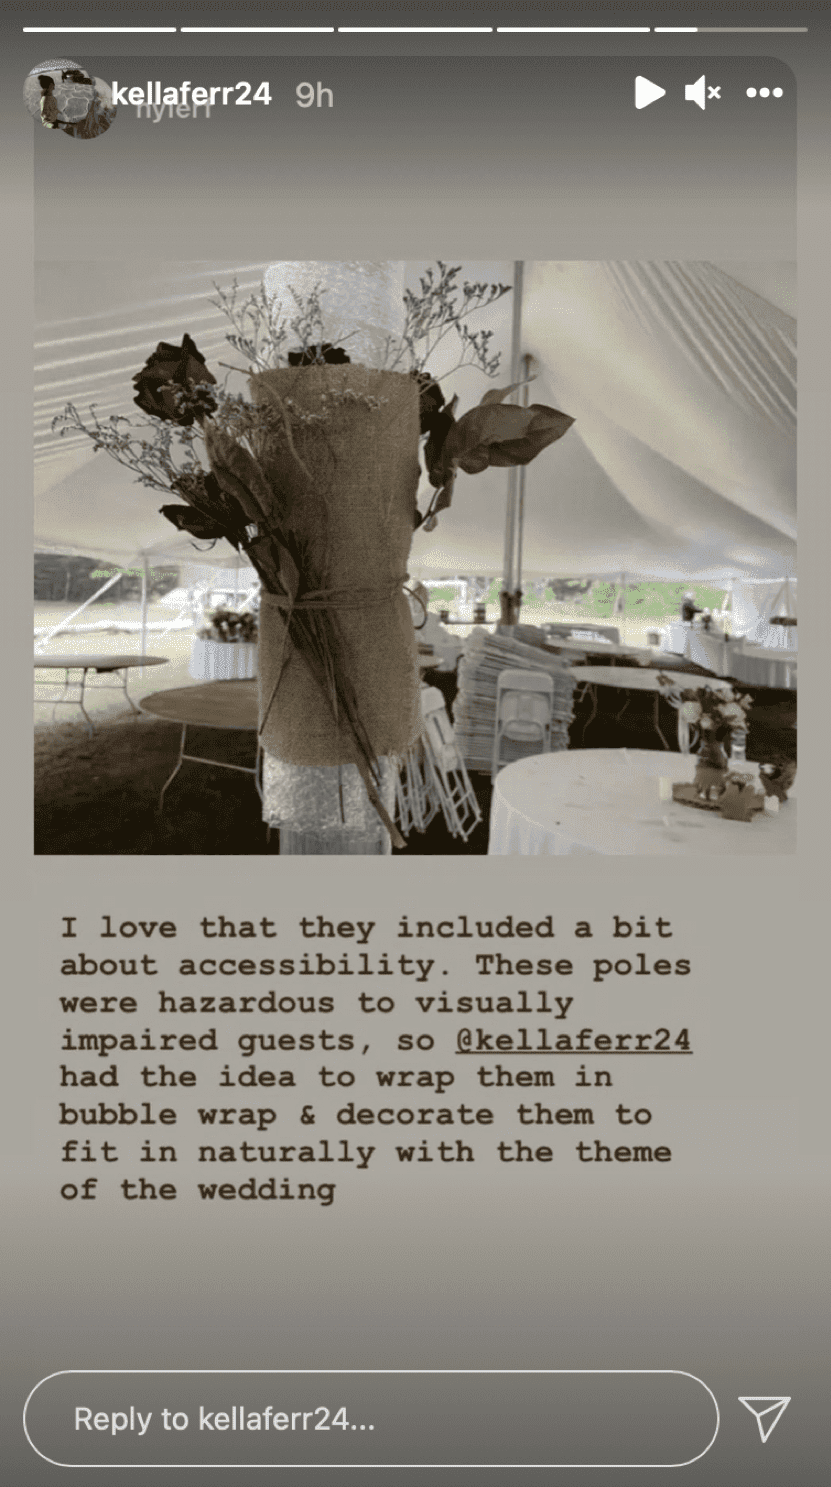 Die Metallpfosten waren während der Hochzeitsfeier in Polsterfolie und dekorative Materialien gewickelt. | Quelle: Instagram.com/kellaferr24